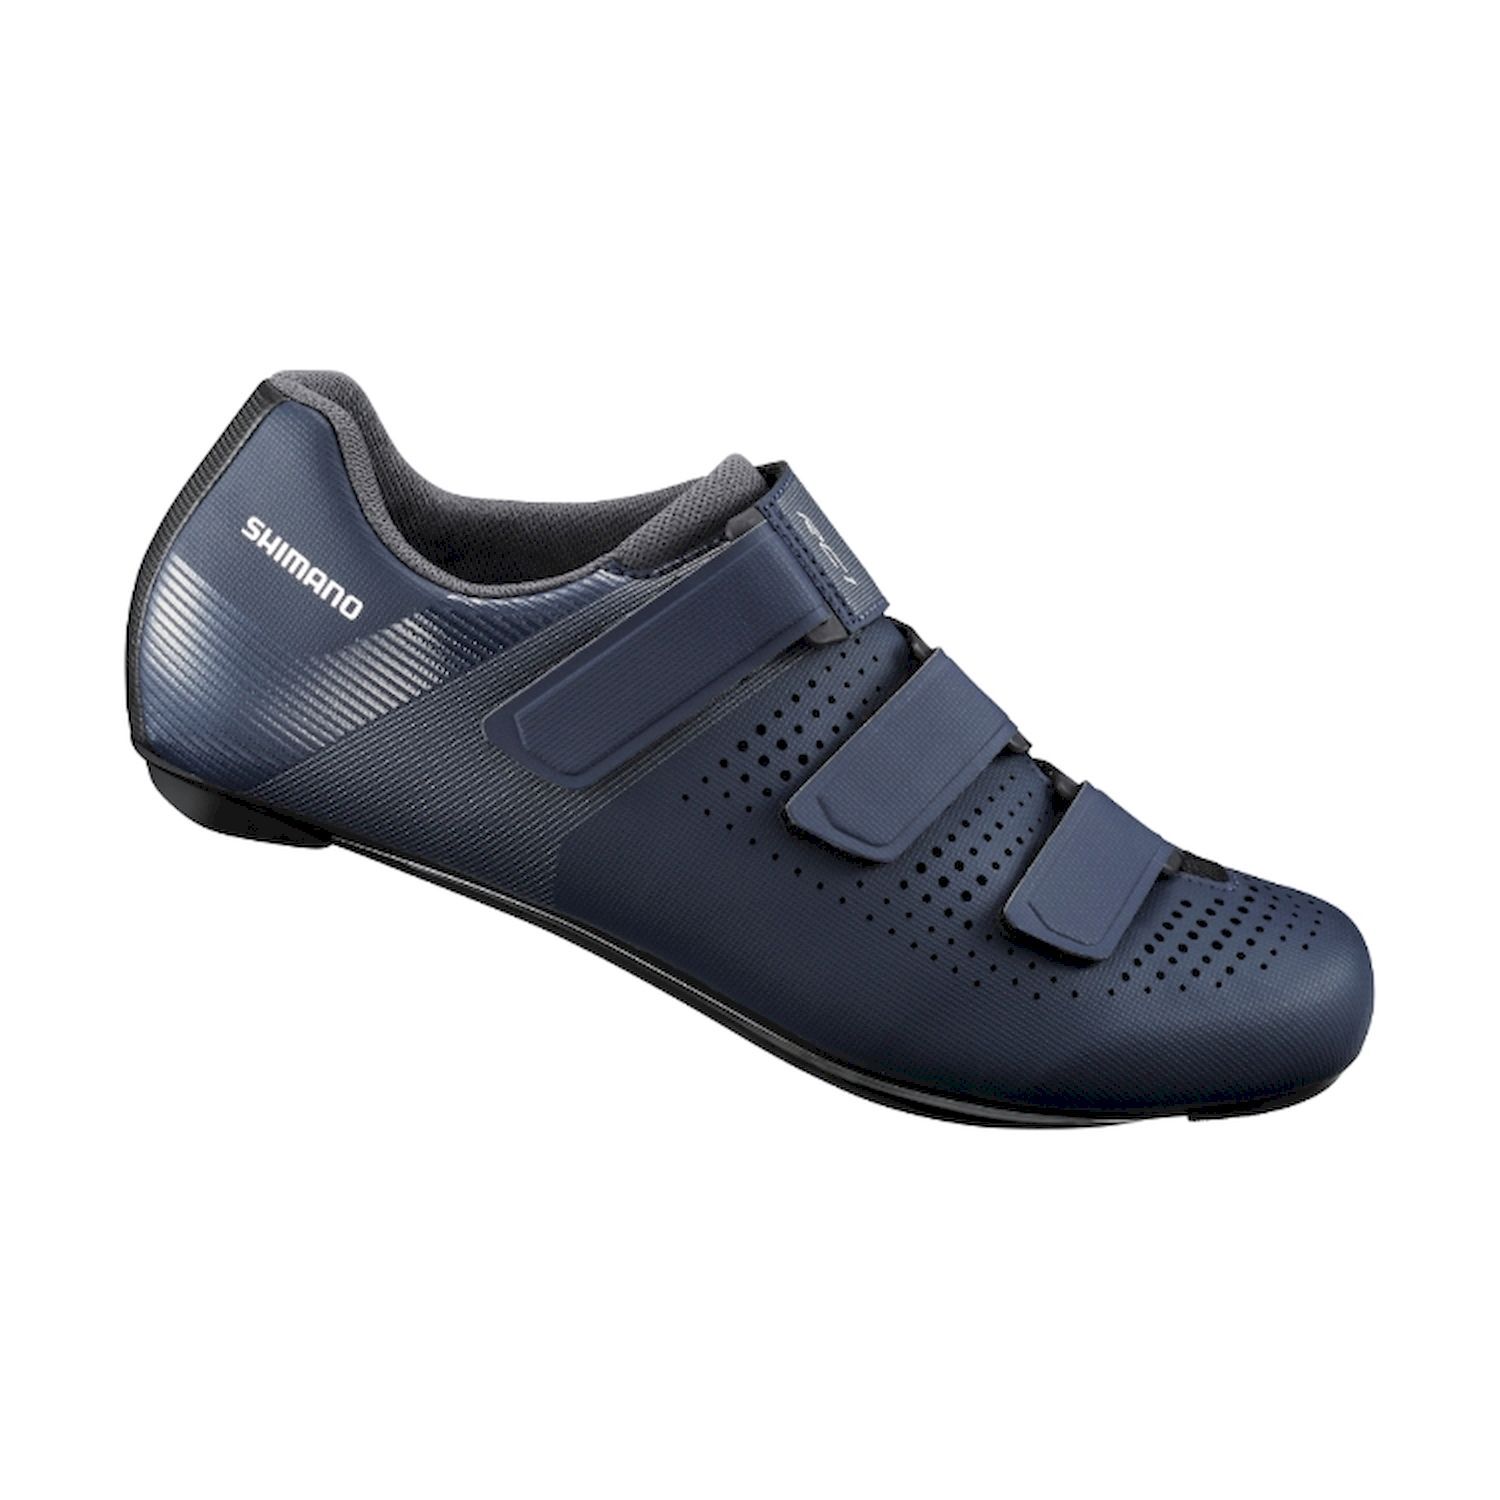 Shimano RC100 - Cycling shoes - Men's